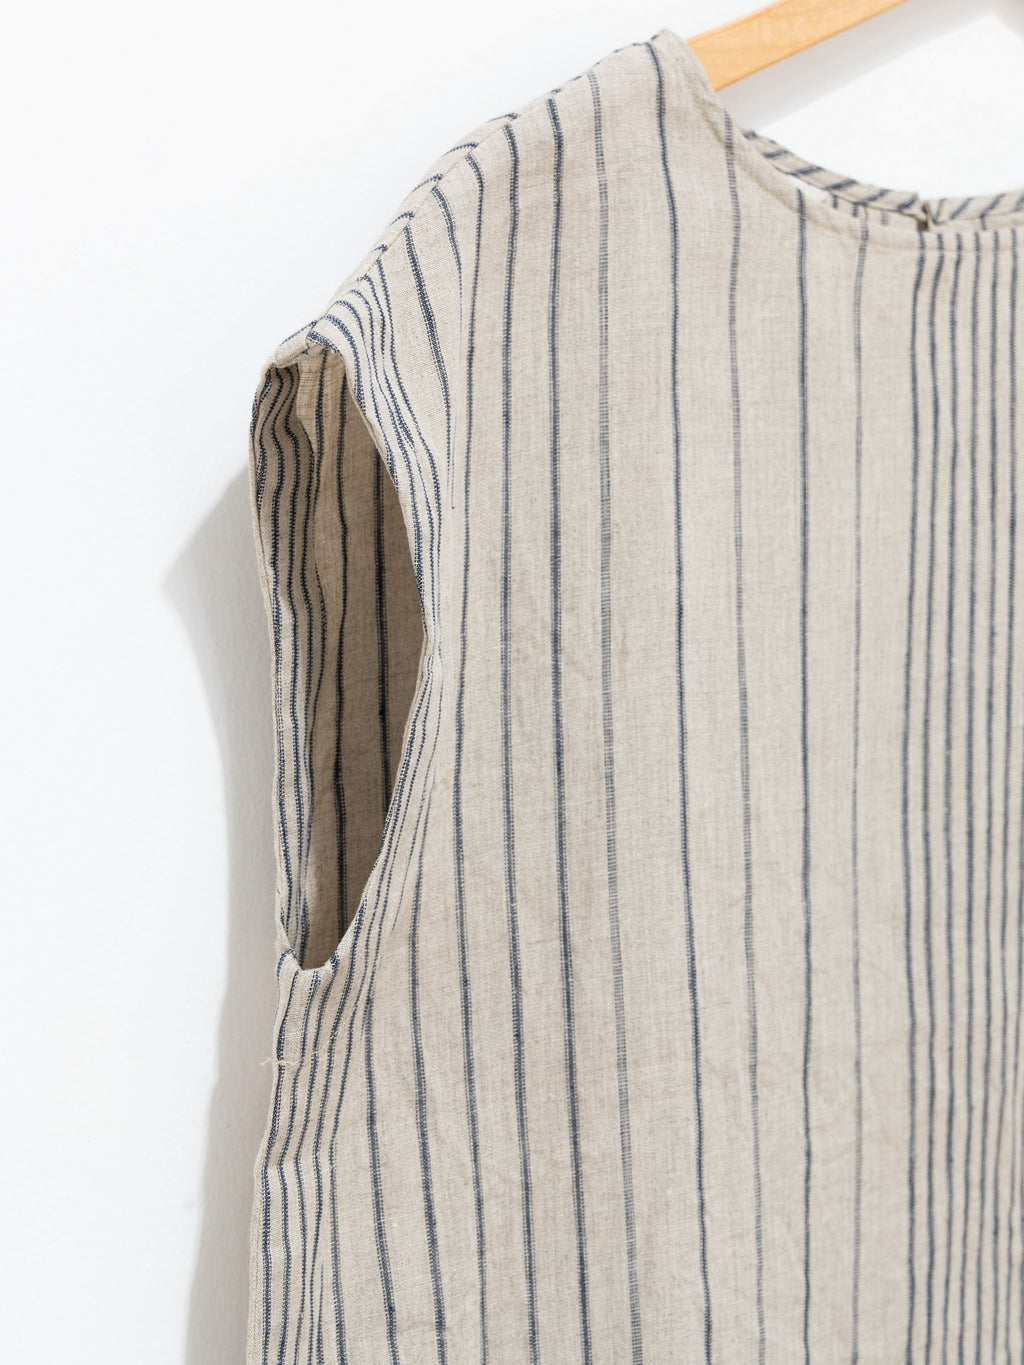 Namu Shop - Ichi Antiquites Linen Random Stripes Sleeveless Pullover - Natural